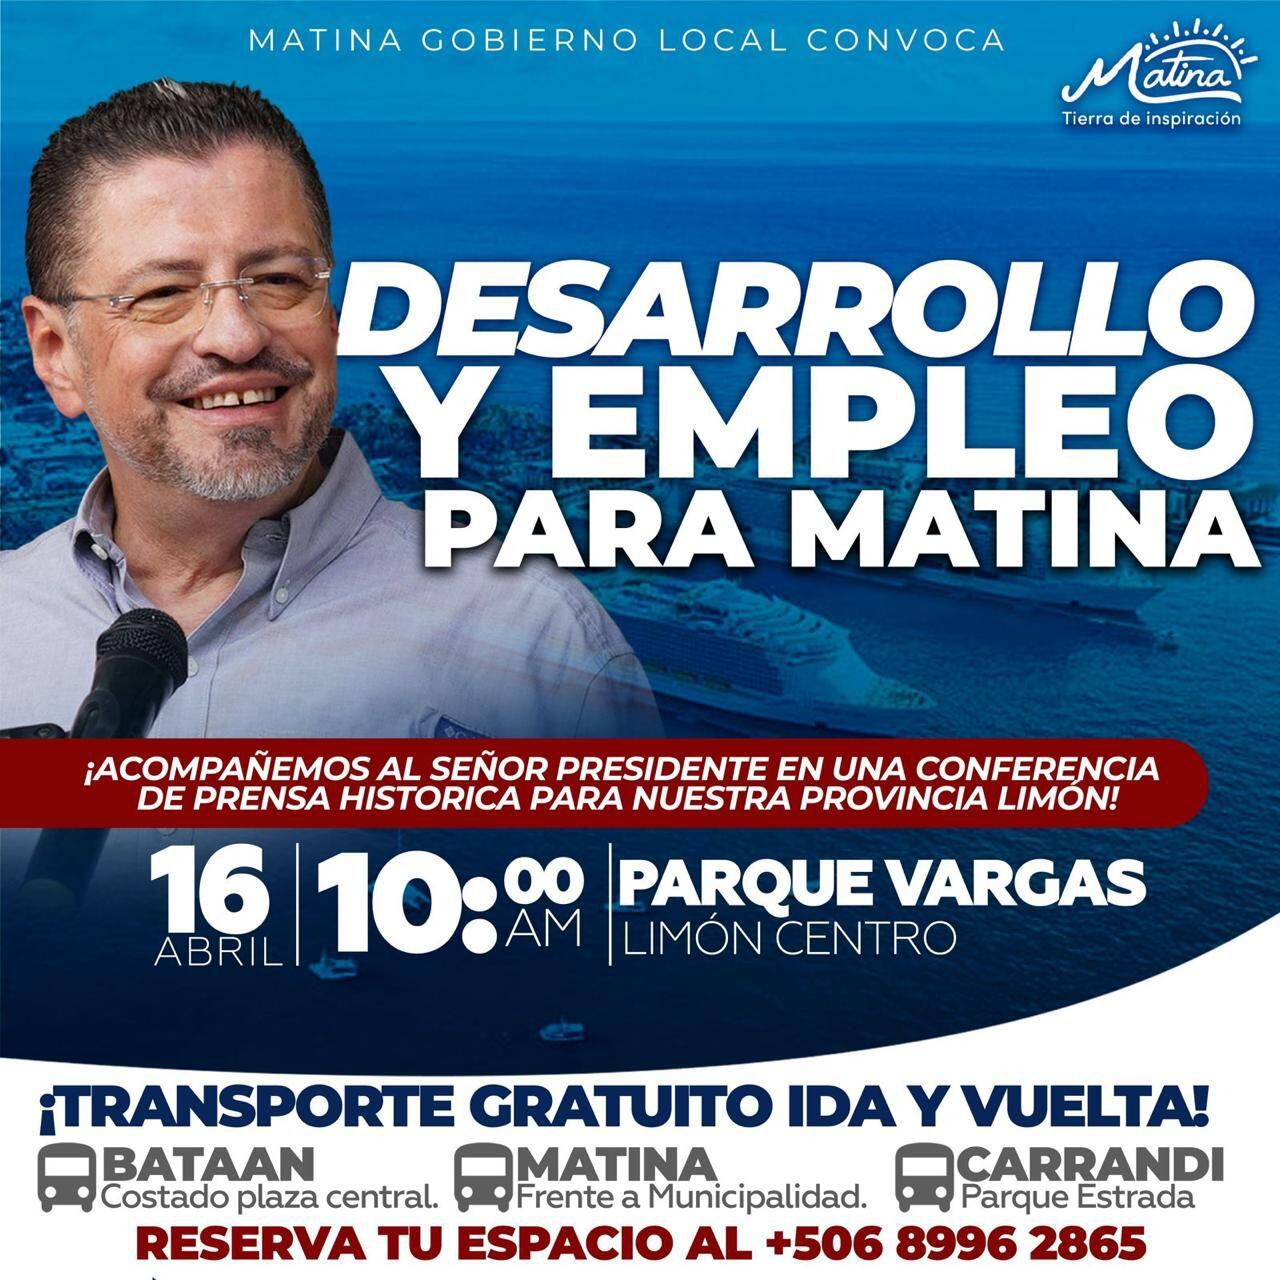 Este es el afiche en el que la Municipalidad de Matina invitó a asistir al discurso del presidente Chaves con transporte gratuito.